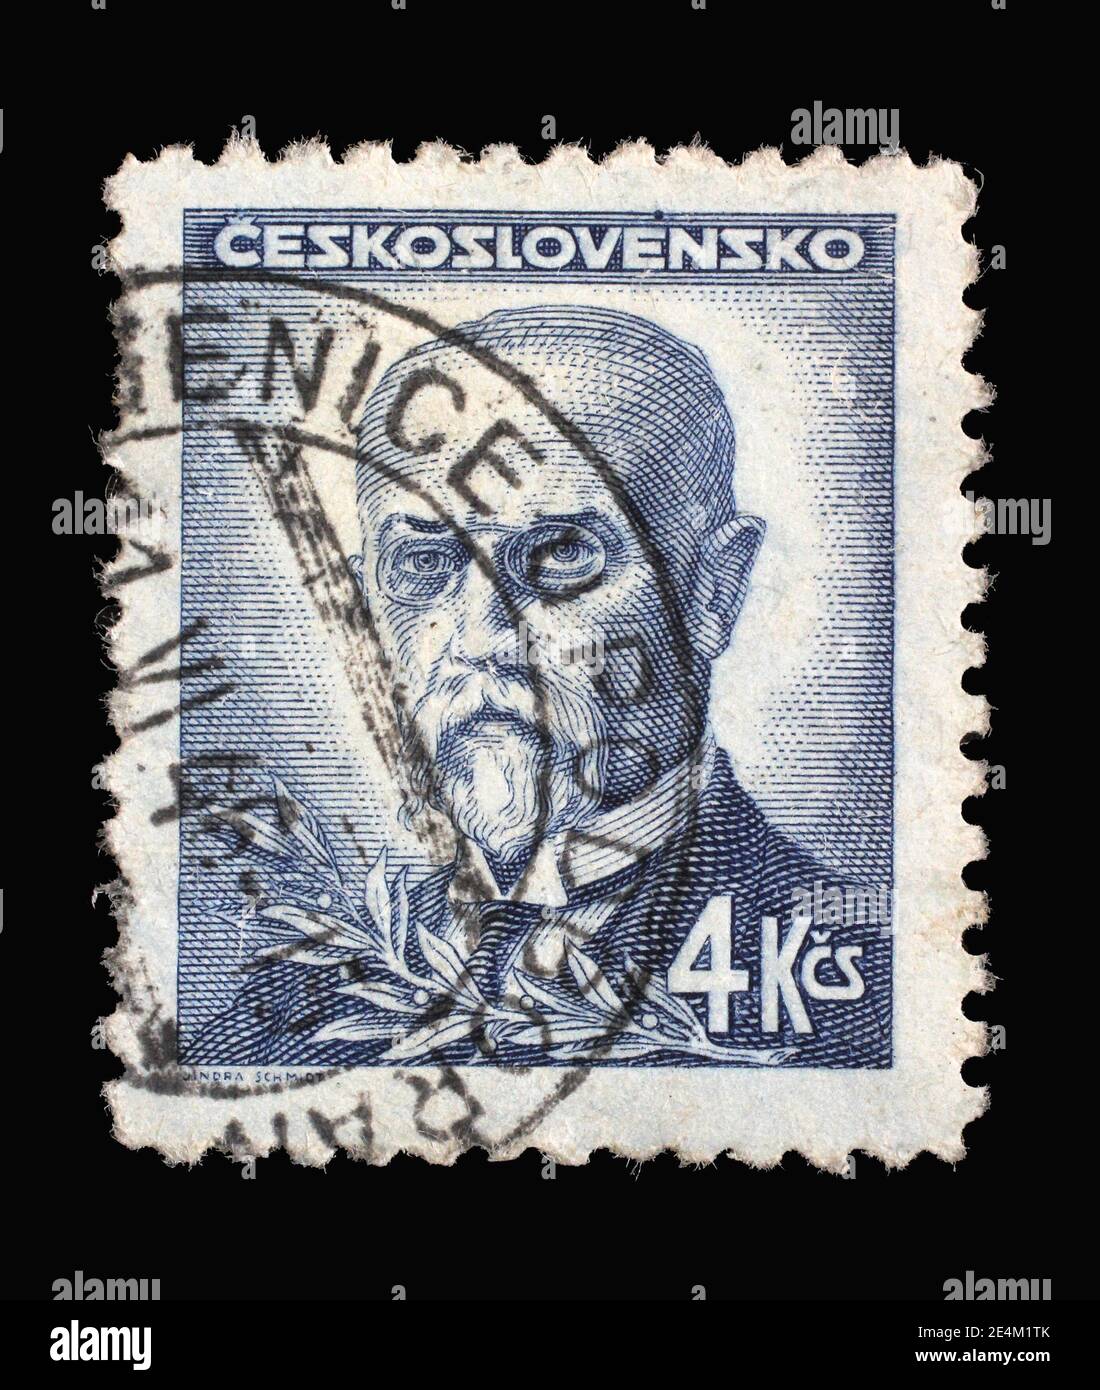 Die in der Tschechoslowakei gedruckte Briefmarke zeigt den ersten Präsidenten der Tschechoslowakei - Thomas Garrigue Masaryk, um 1946 Stockfoto